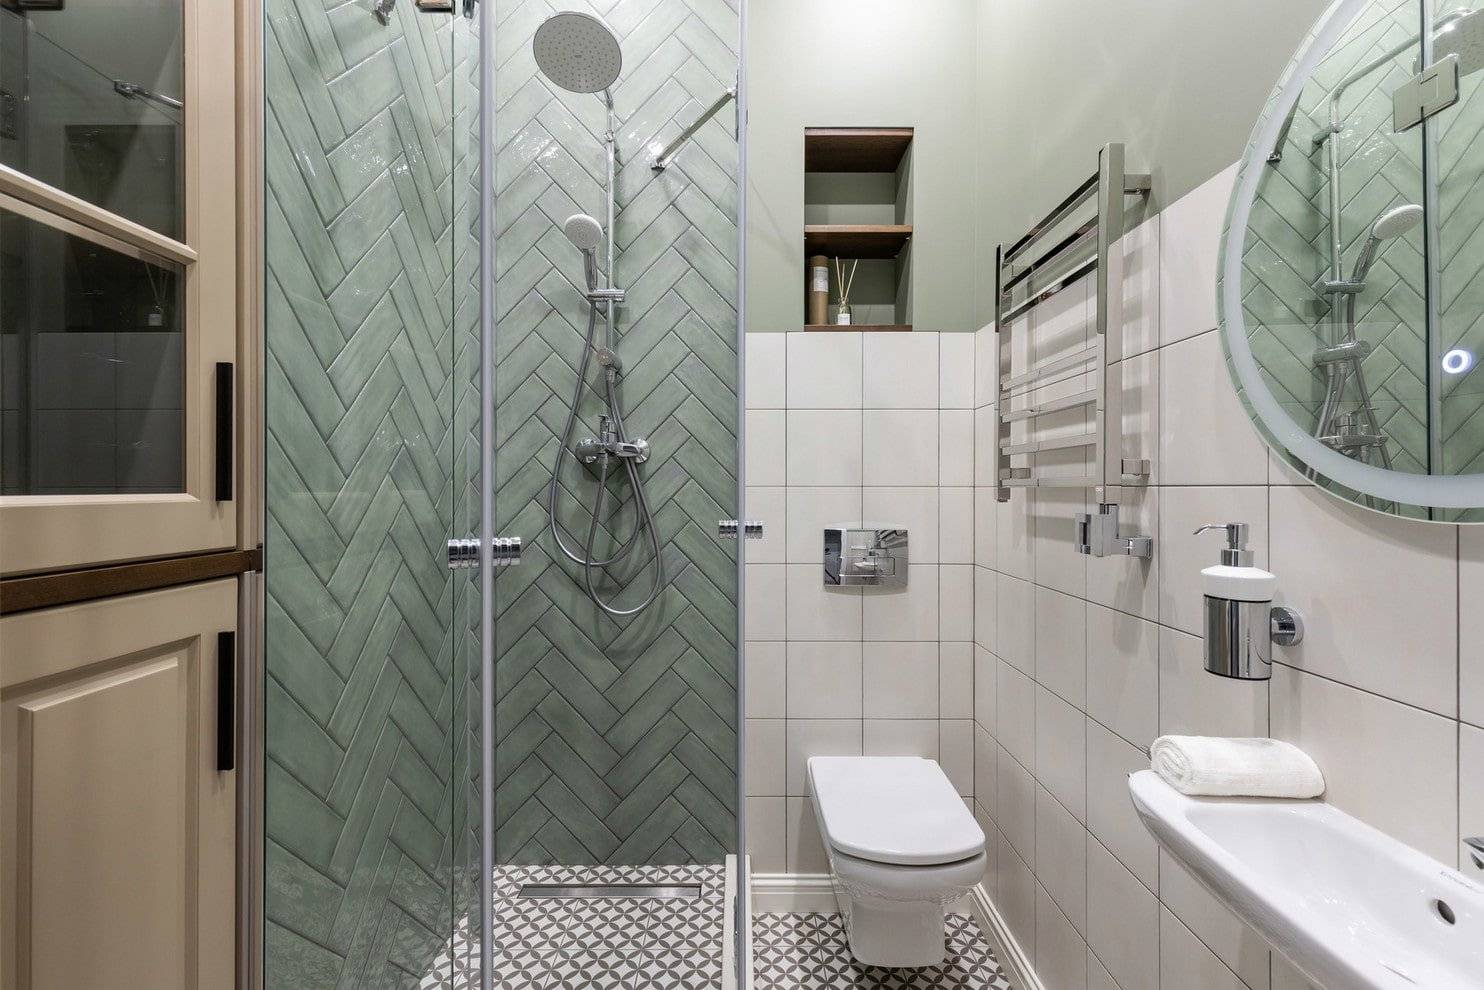 Примеры дизайна ванной комнаты с душевой кабиной и ванной